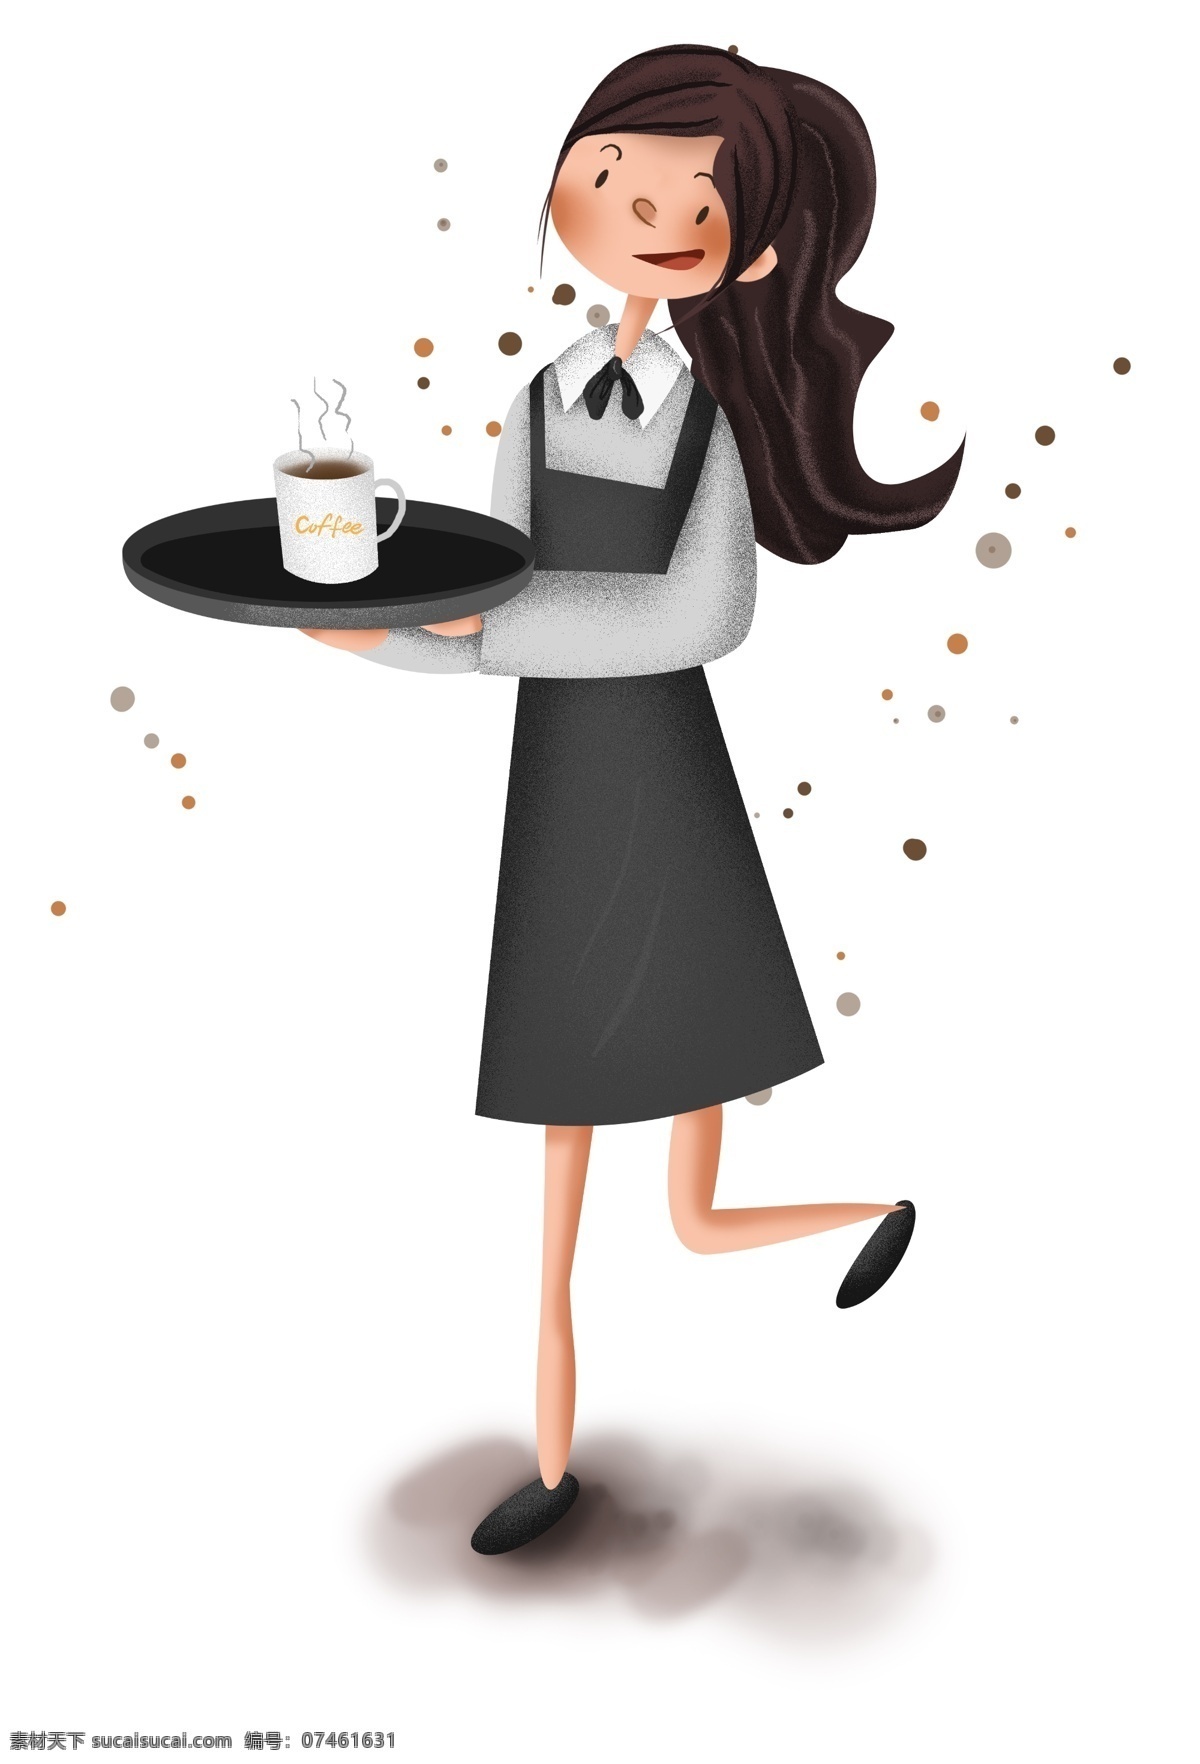 工作 系列 咖啡店 女 店员 服务员 热咖啡 卡布奇诺 女服务员 女性 饮料 饮品 冬天 咖啡 摩卡 冬季饮品